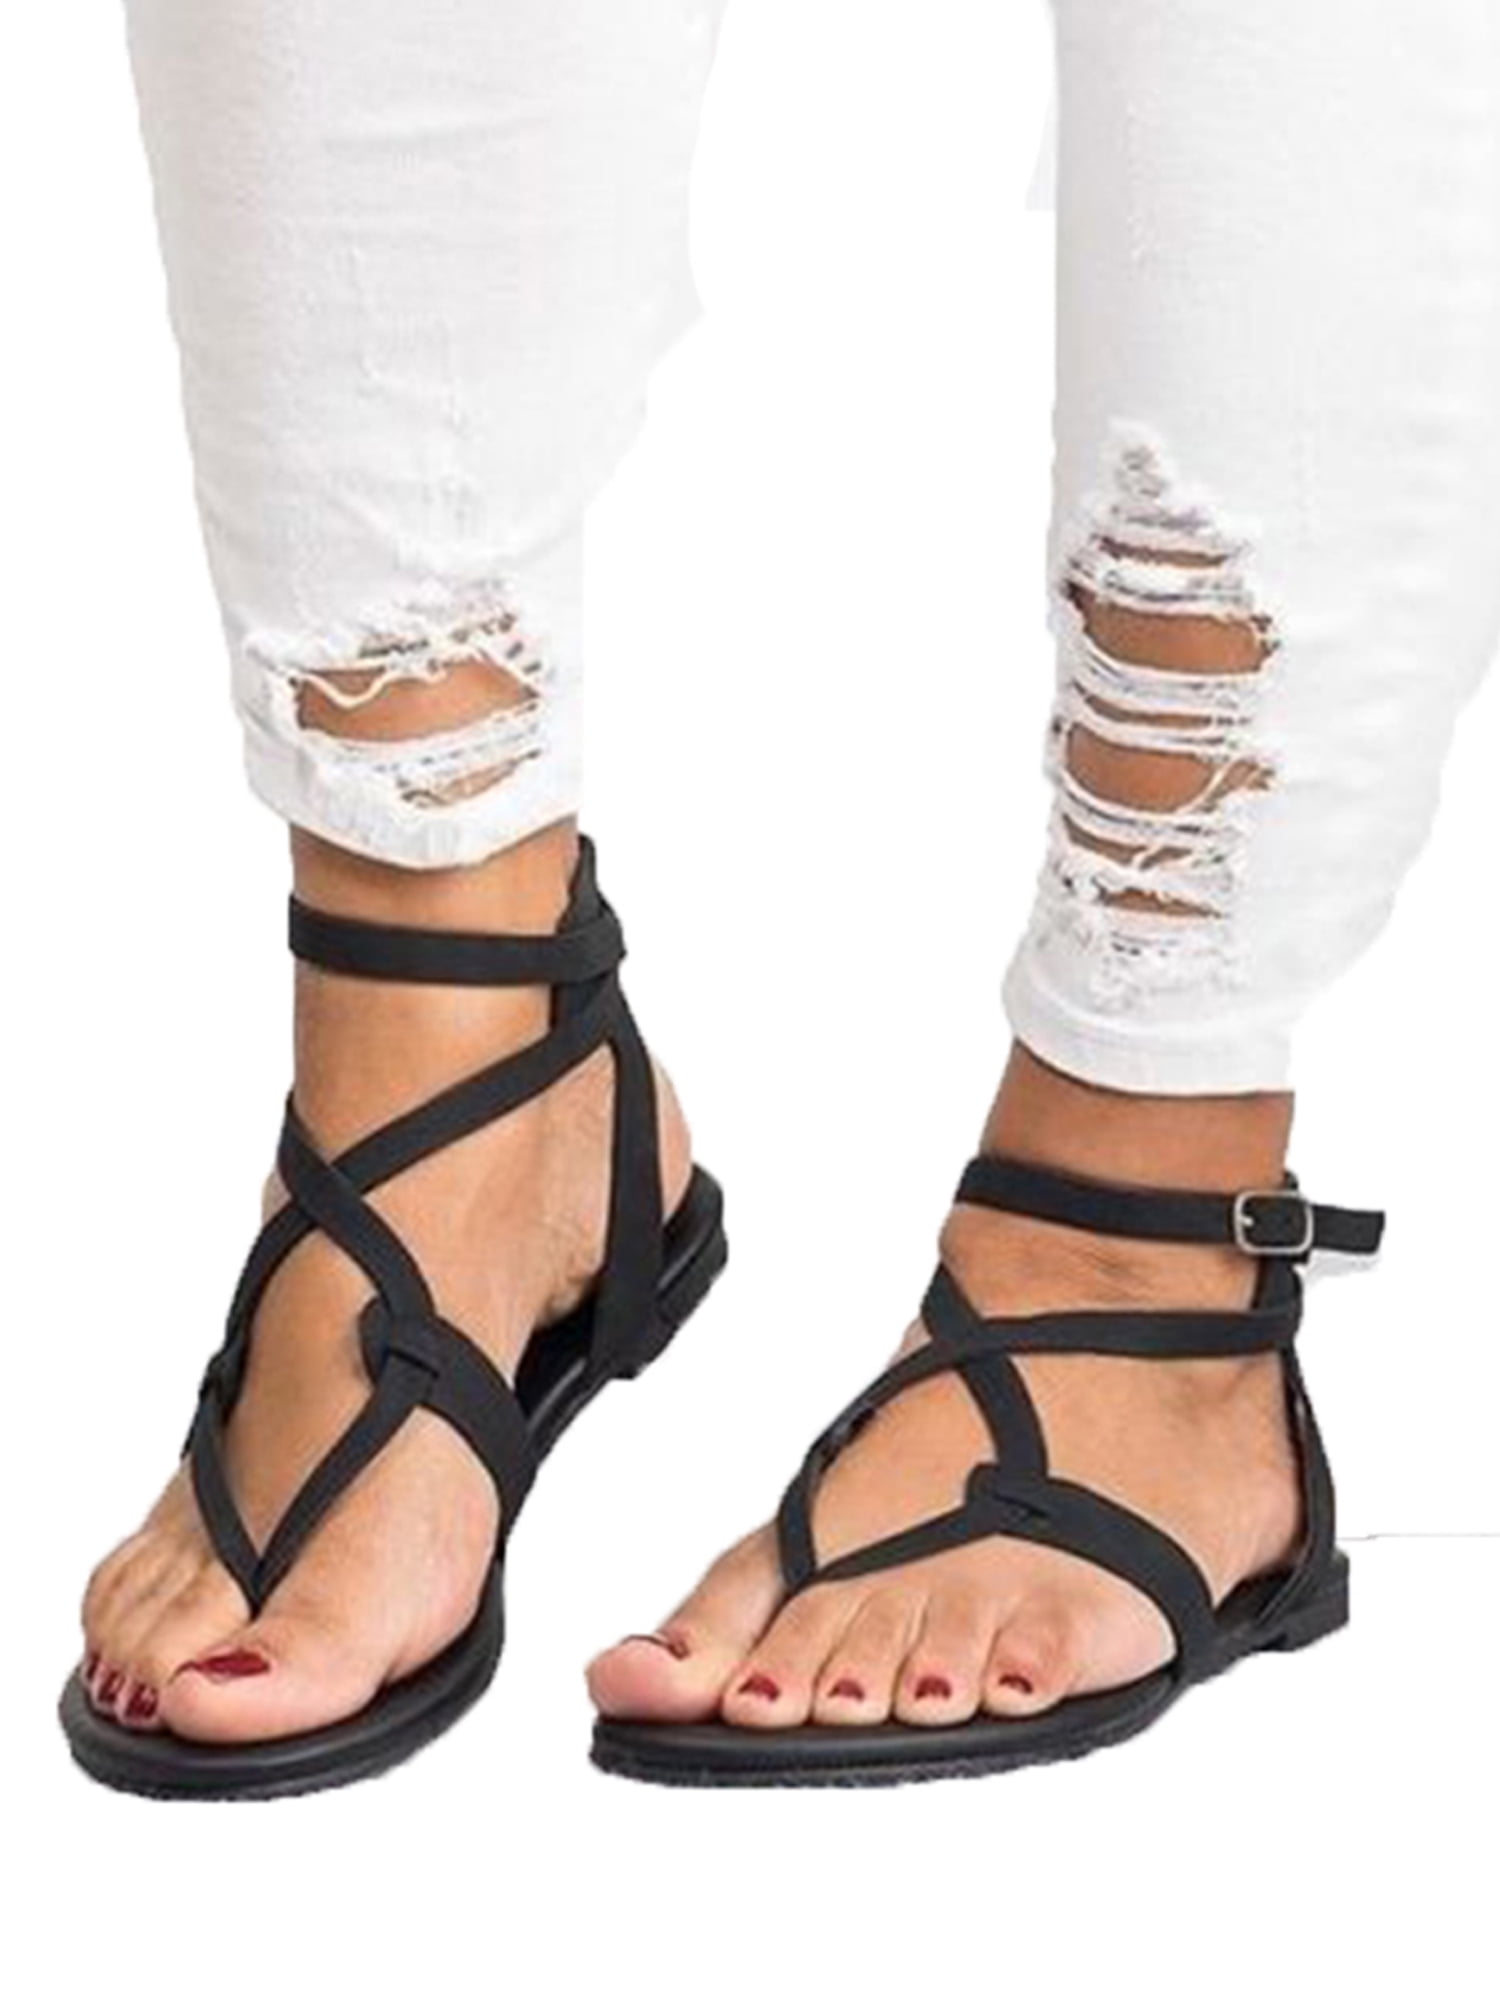 New 2019 Summer Shoes Women Sandals Casual flip Flops Women Flat Sandals Beach Shoes,White,6.5